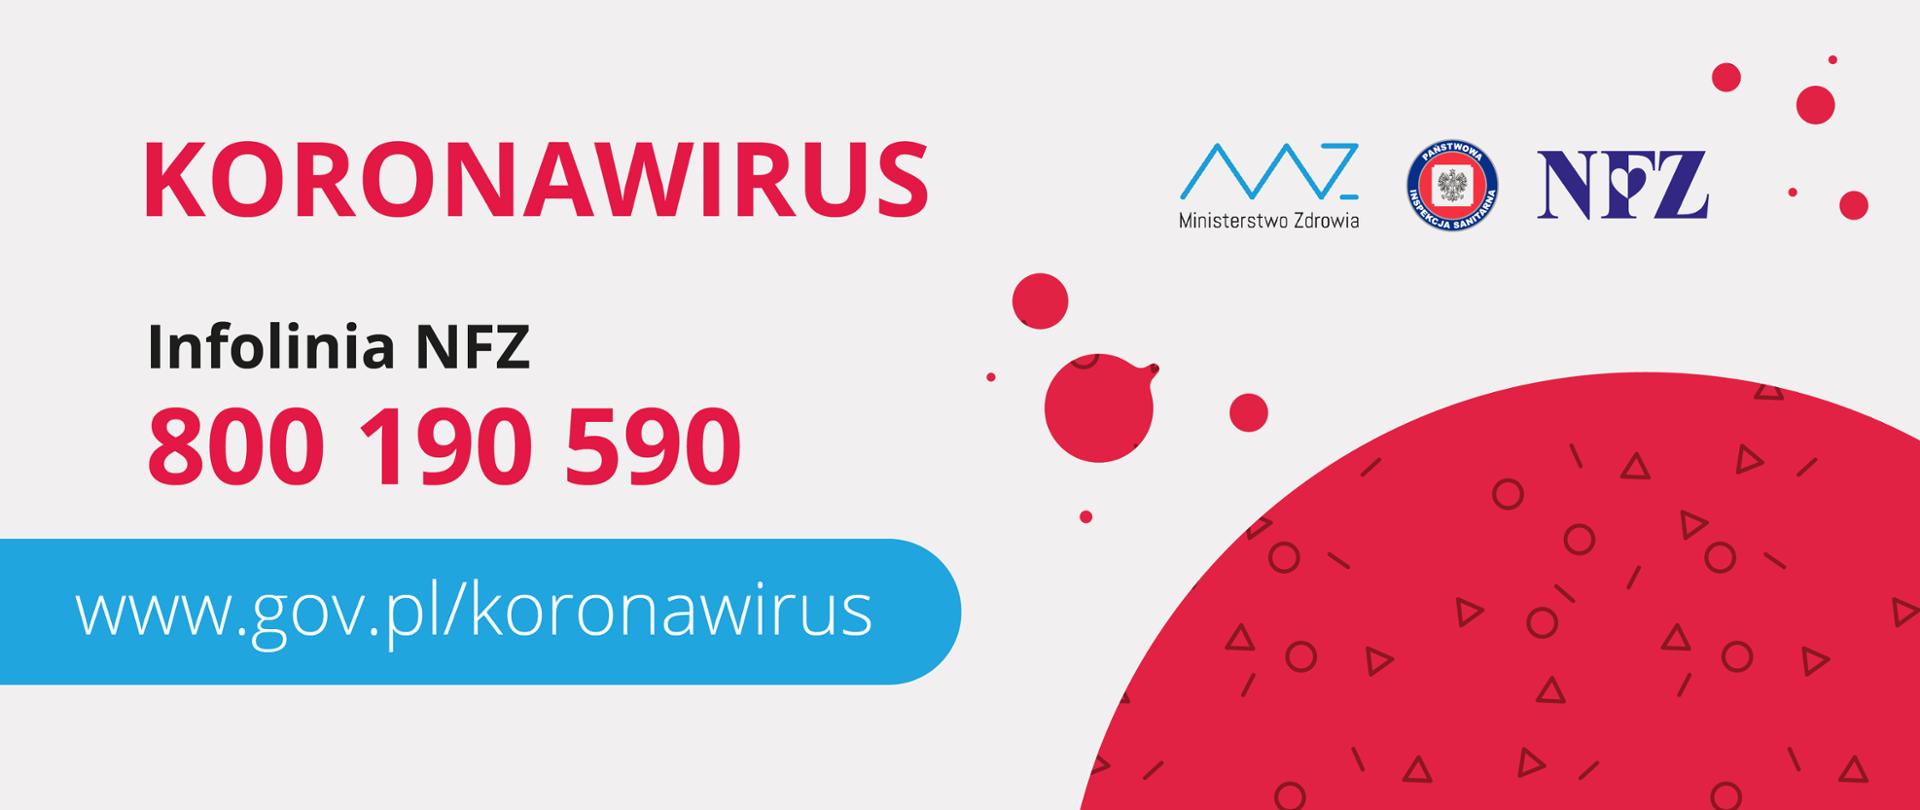 Grafika z hasłem "koronawirus" oraz numerem infolinii NFZ: 800 190 590.
Pod tekstem jest adres strony dotyczącej koronawirusa: www.gov.pl/koronawirus